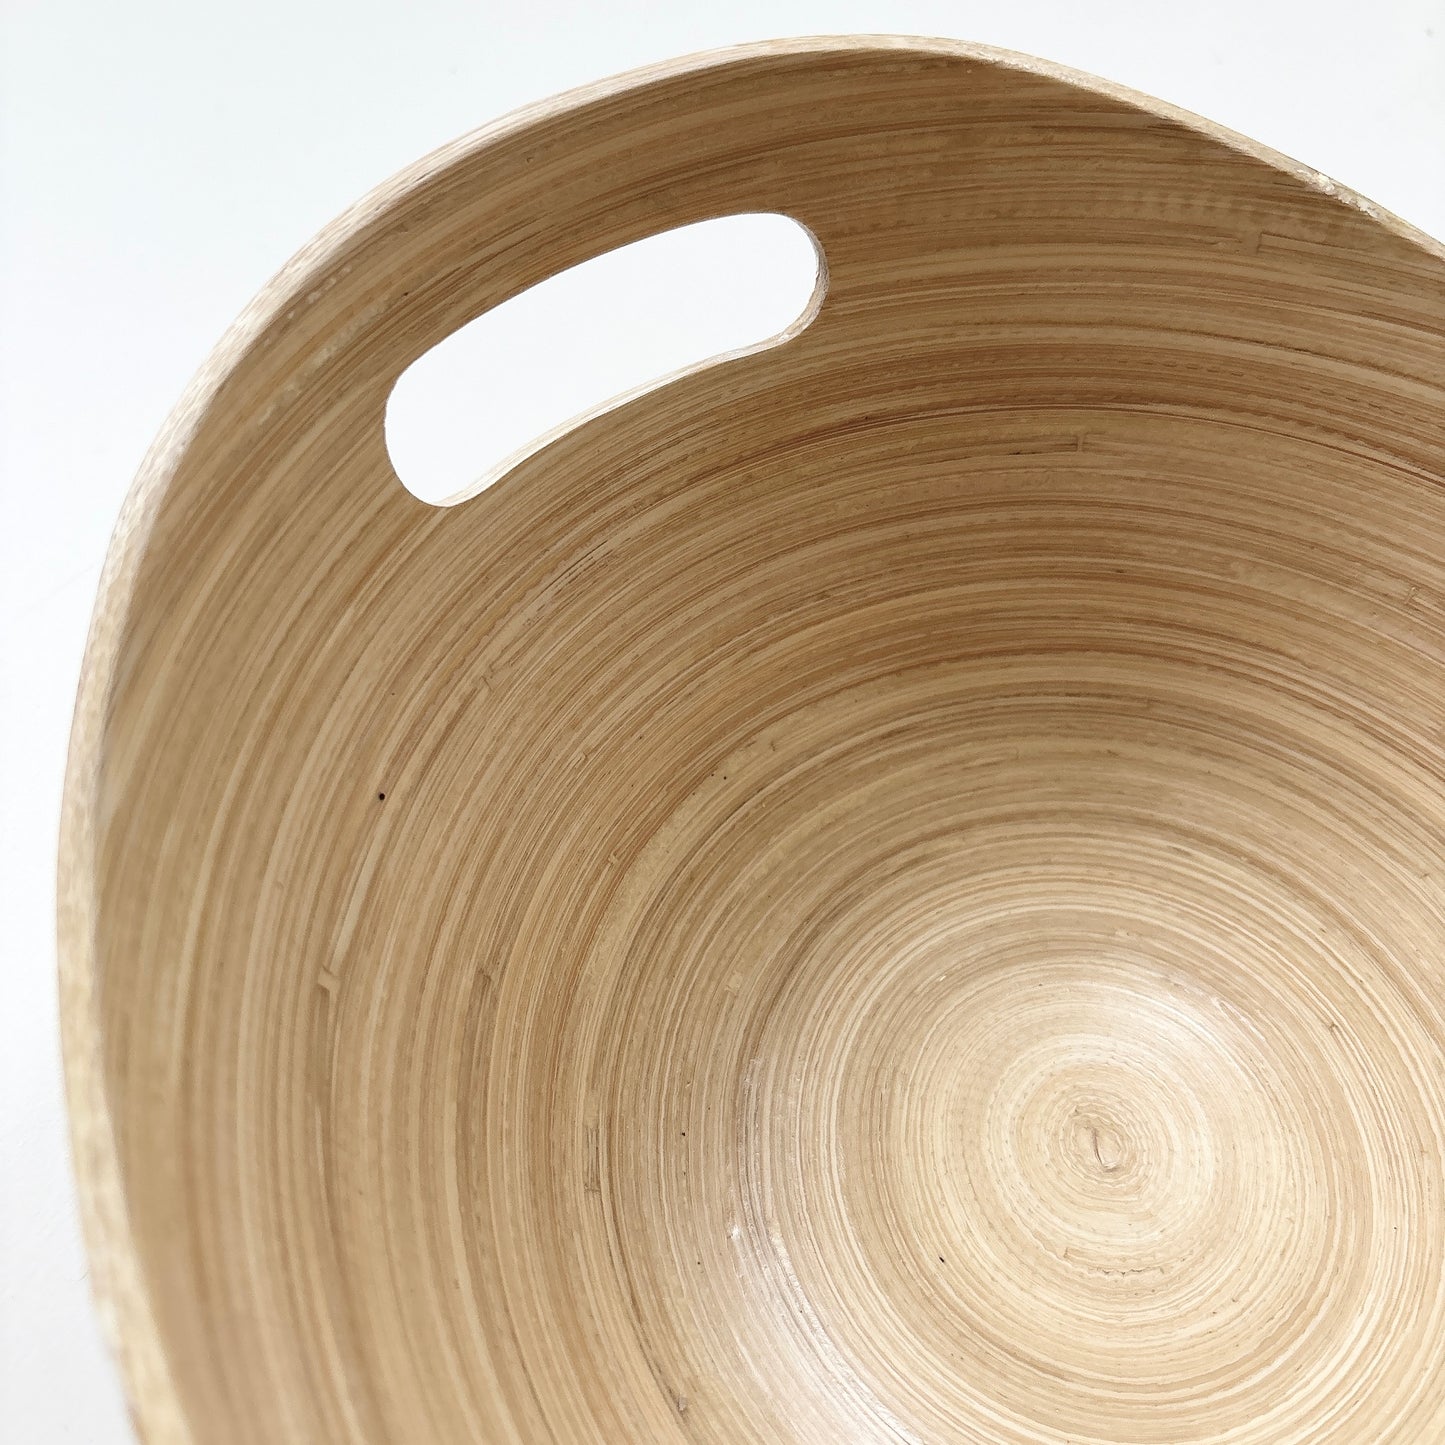 bamboo kuchen style oval bowl